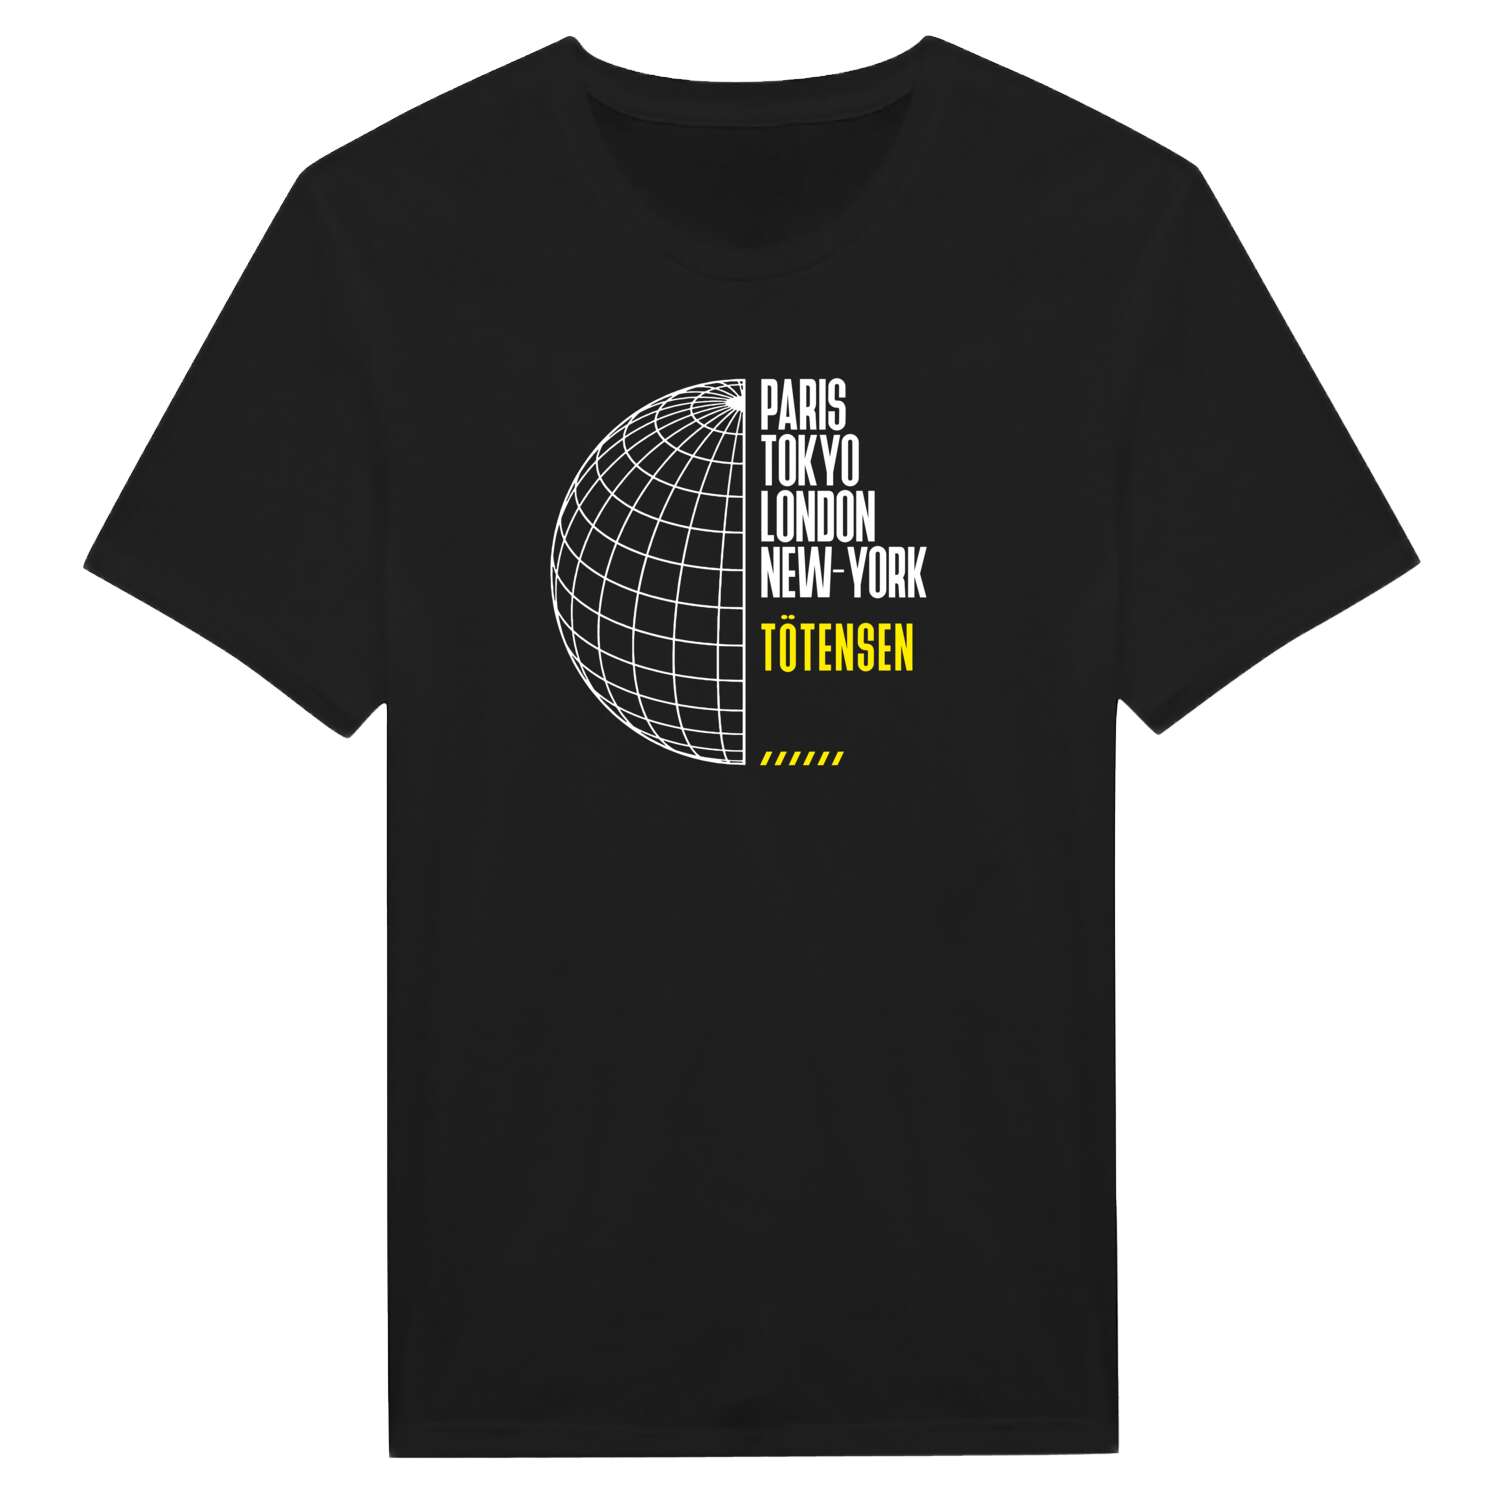 Tötensen T-Shirt »Paris Tokyo London«